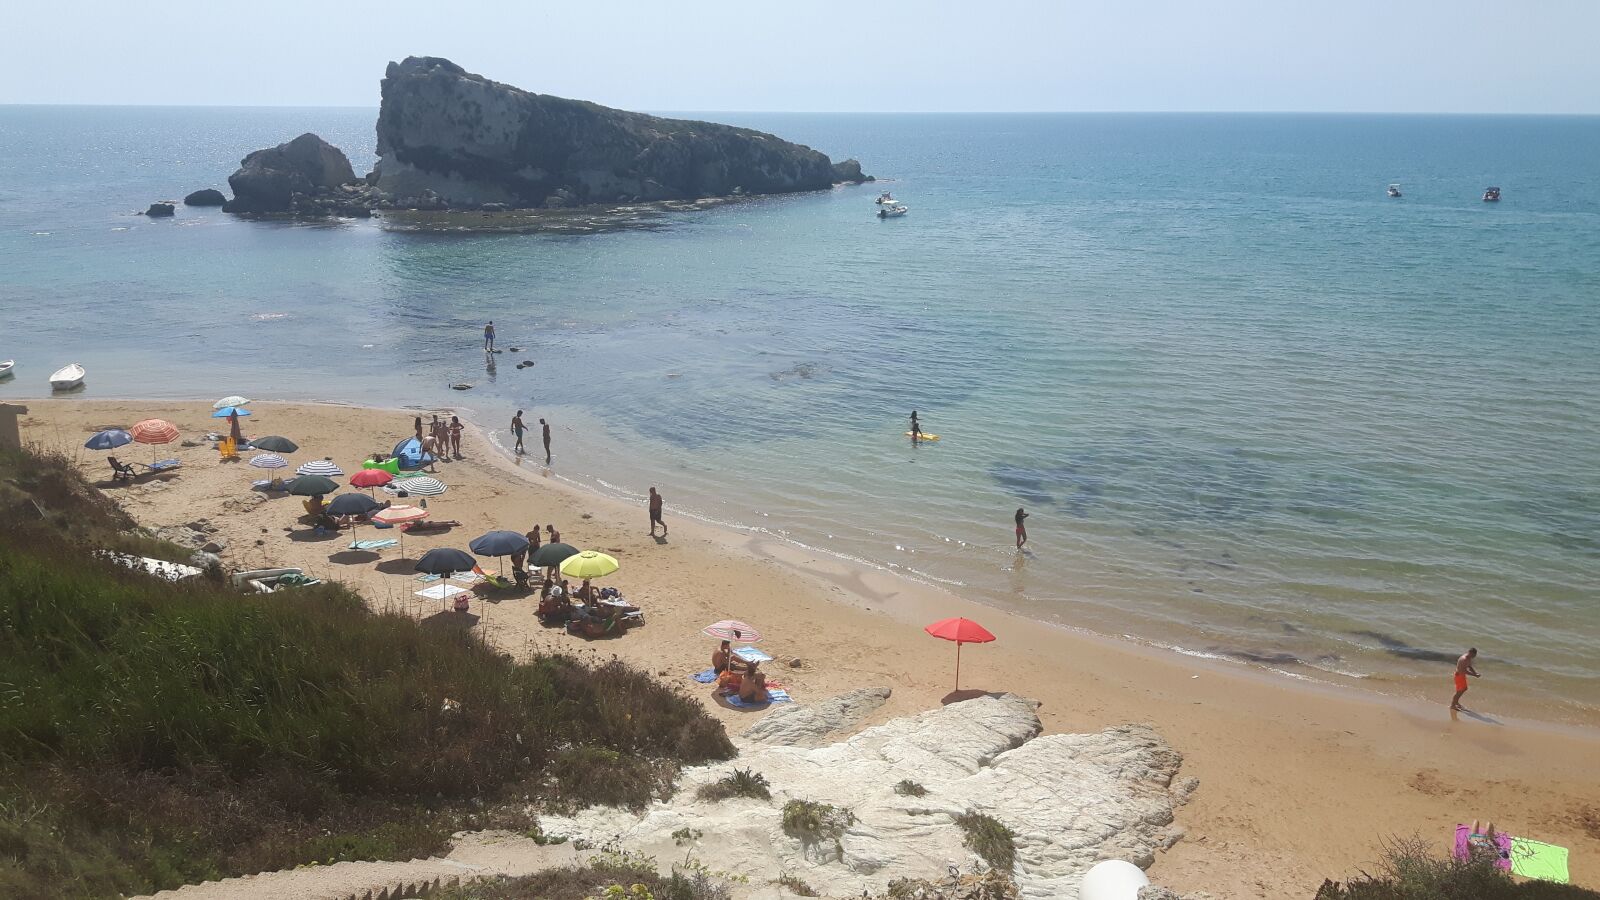 Samsung Galaxy S5 Neo sample photo. Spiaggia, mare, sicilia photography